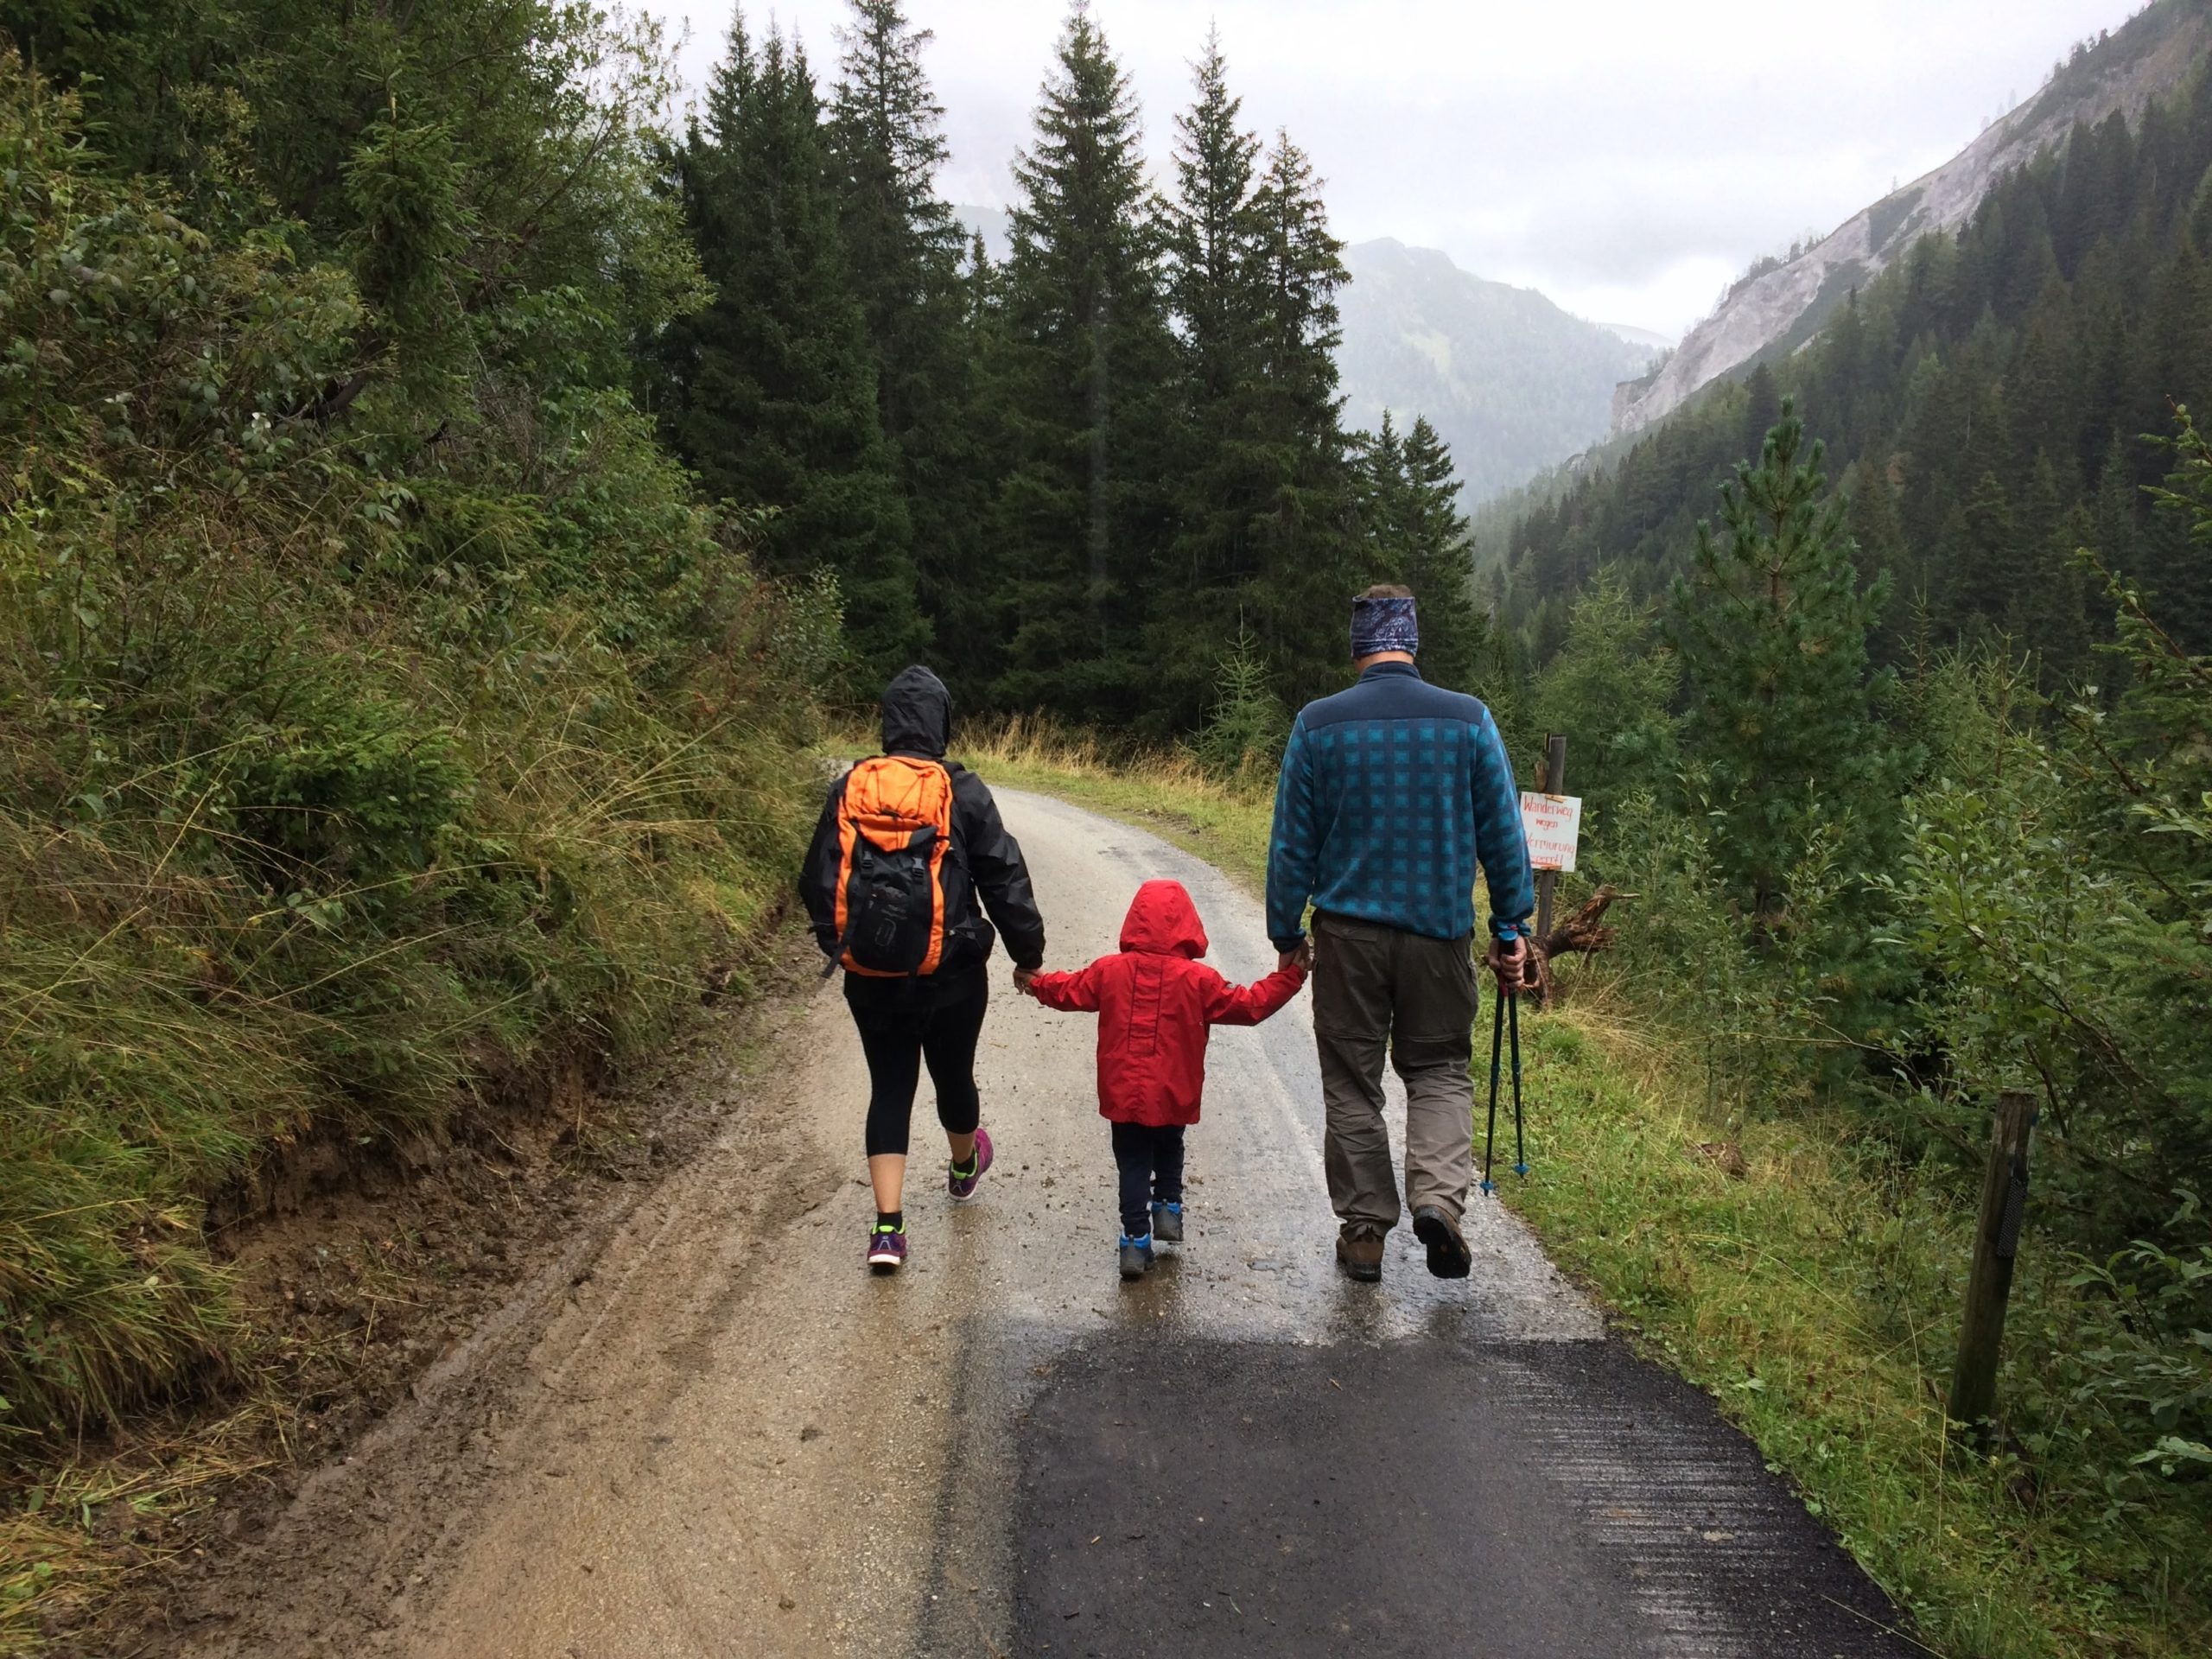 Двое родителей гуляют под дождем, а между ними ребенок. На ребенке ярко-красный плащ, и все держатся за руки. Прогулка по горной дороге